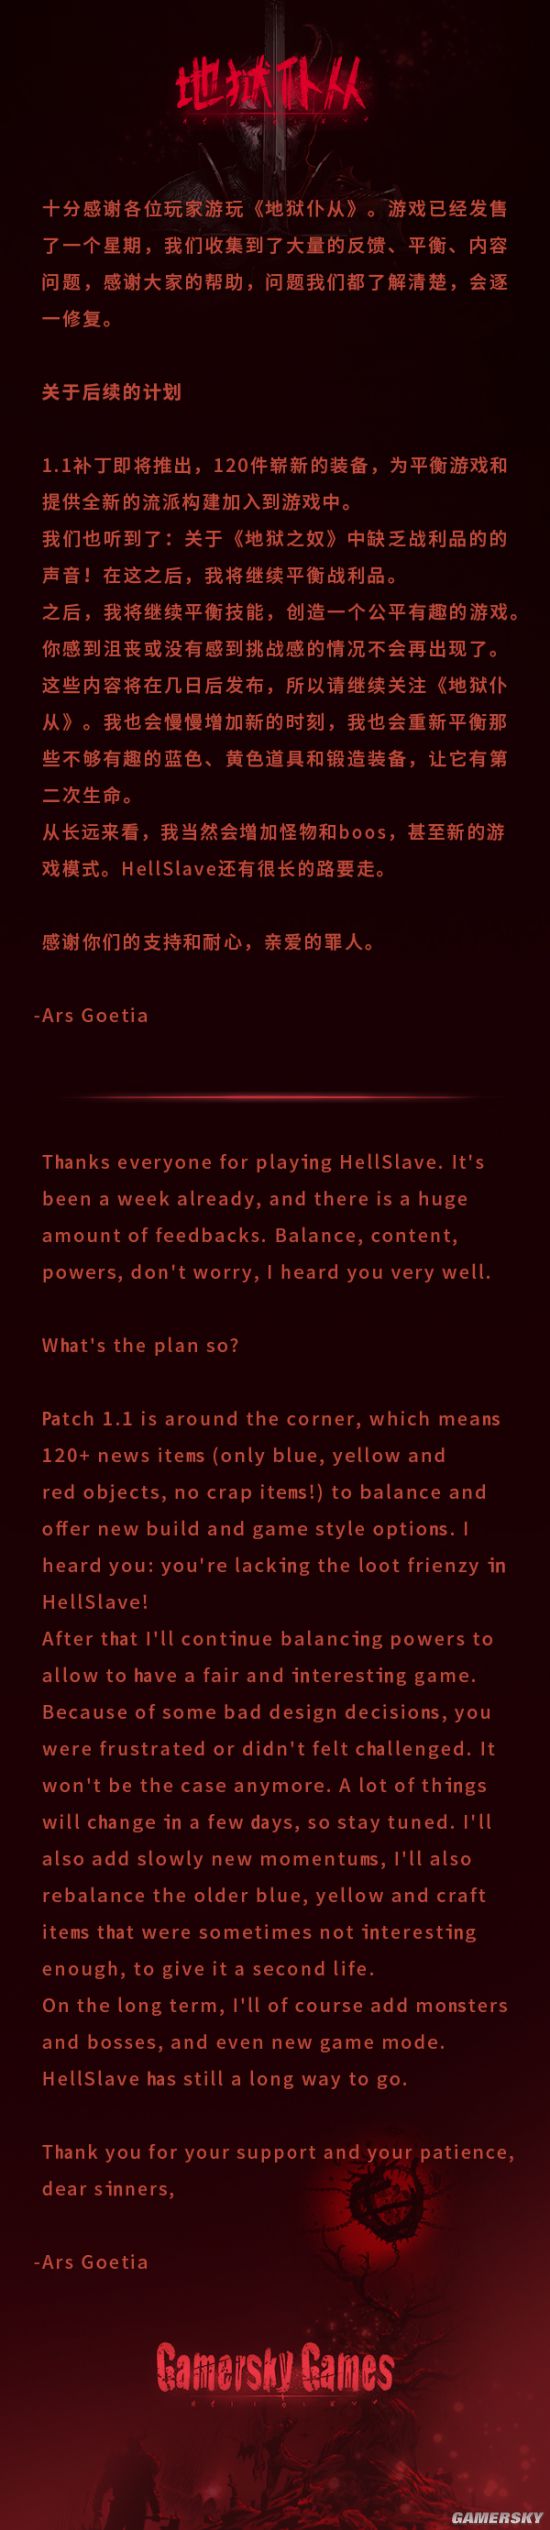 《地狱仆从》开发商发文感谢玩家 公布未来更新计划